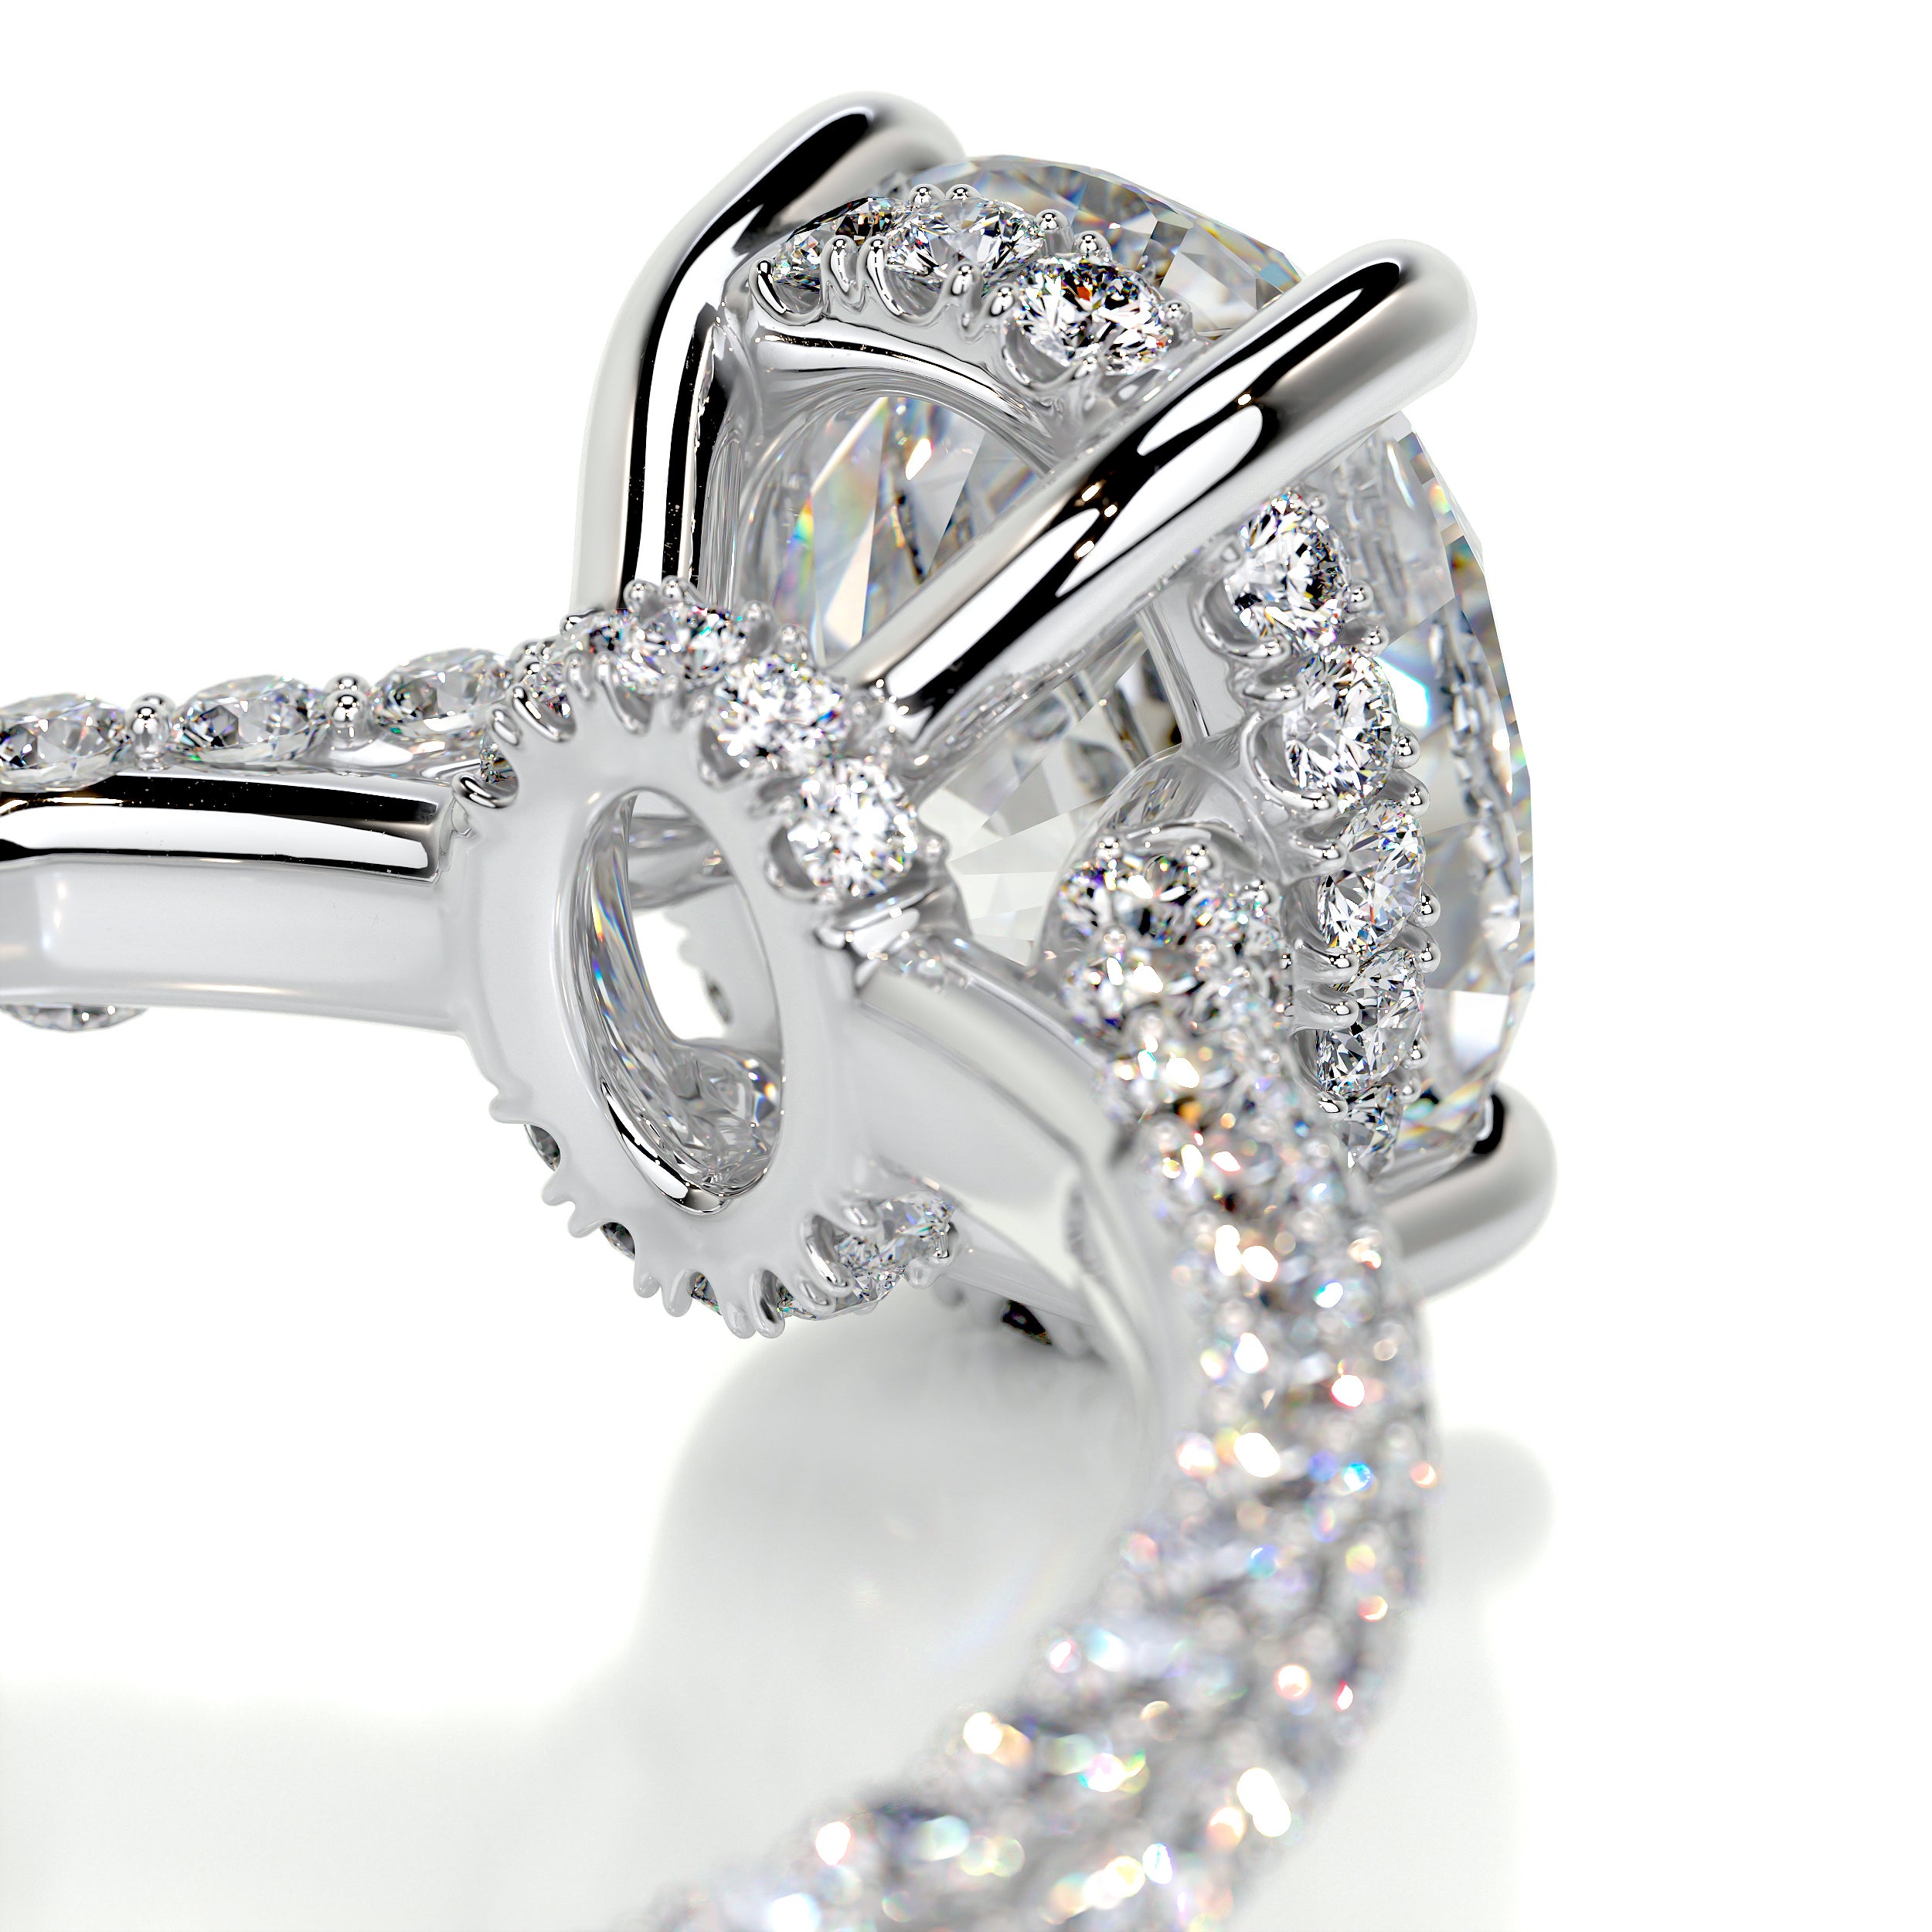 Rebecca Moissanite & Diamonds Ring   (2.65 Carat) -Platinum